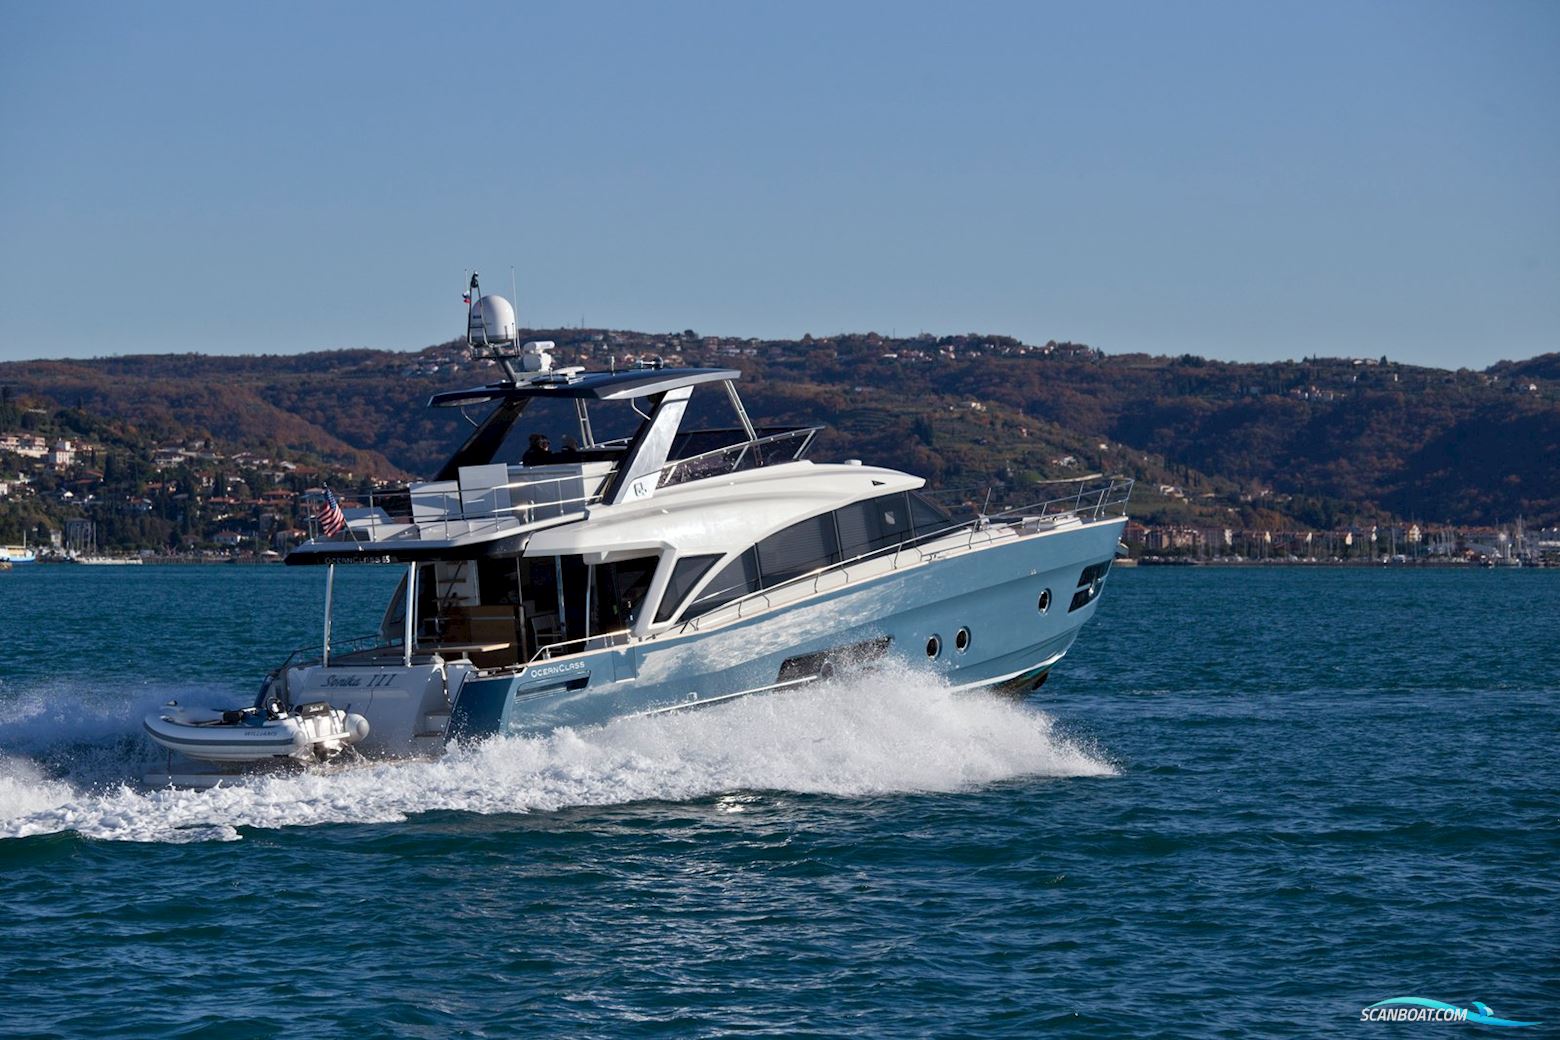 Greenline 65 OC Motorboot 2020, mit 2 x Cat 12.9 L motor, Dänemark